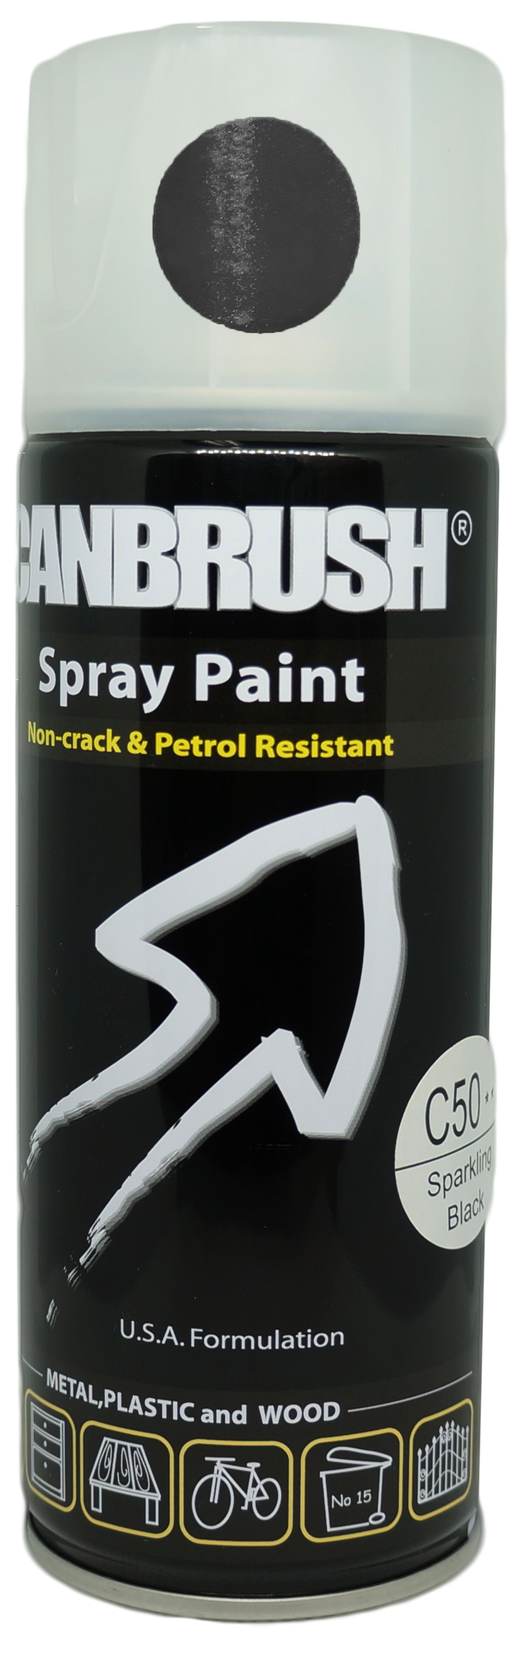 C50 Sparkling Black - Canbrush Spray Paints UK